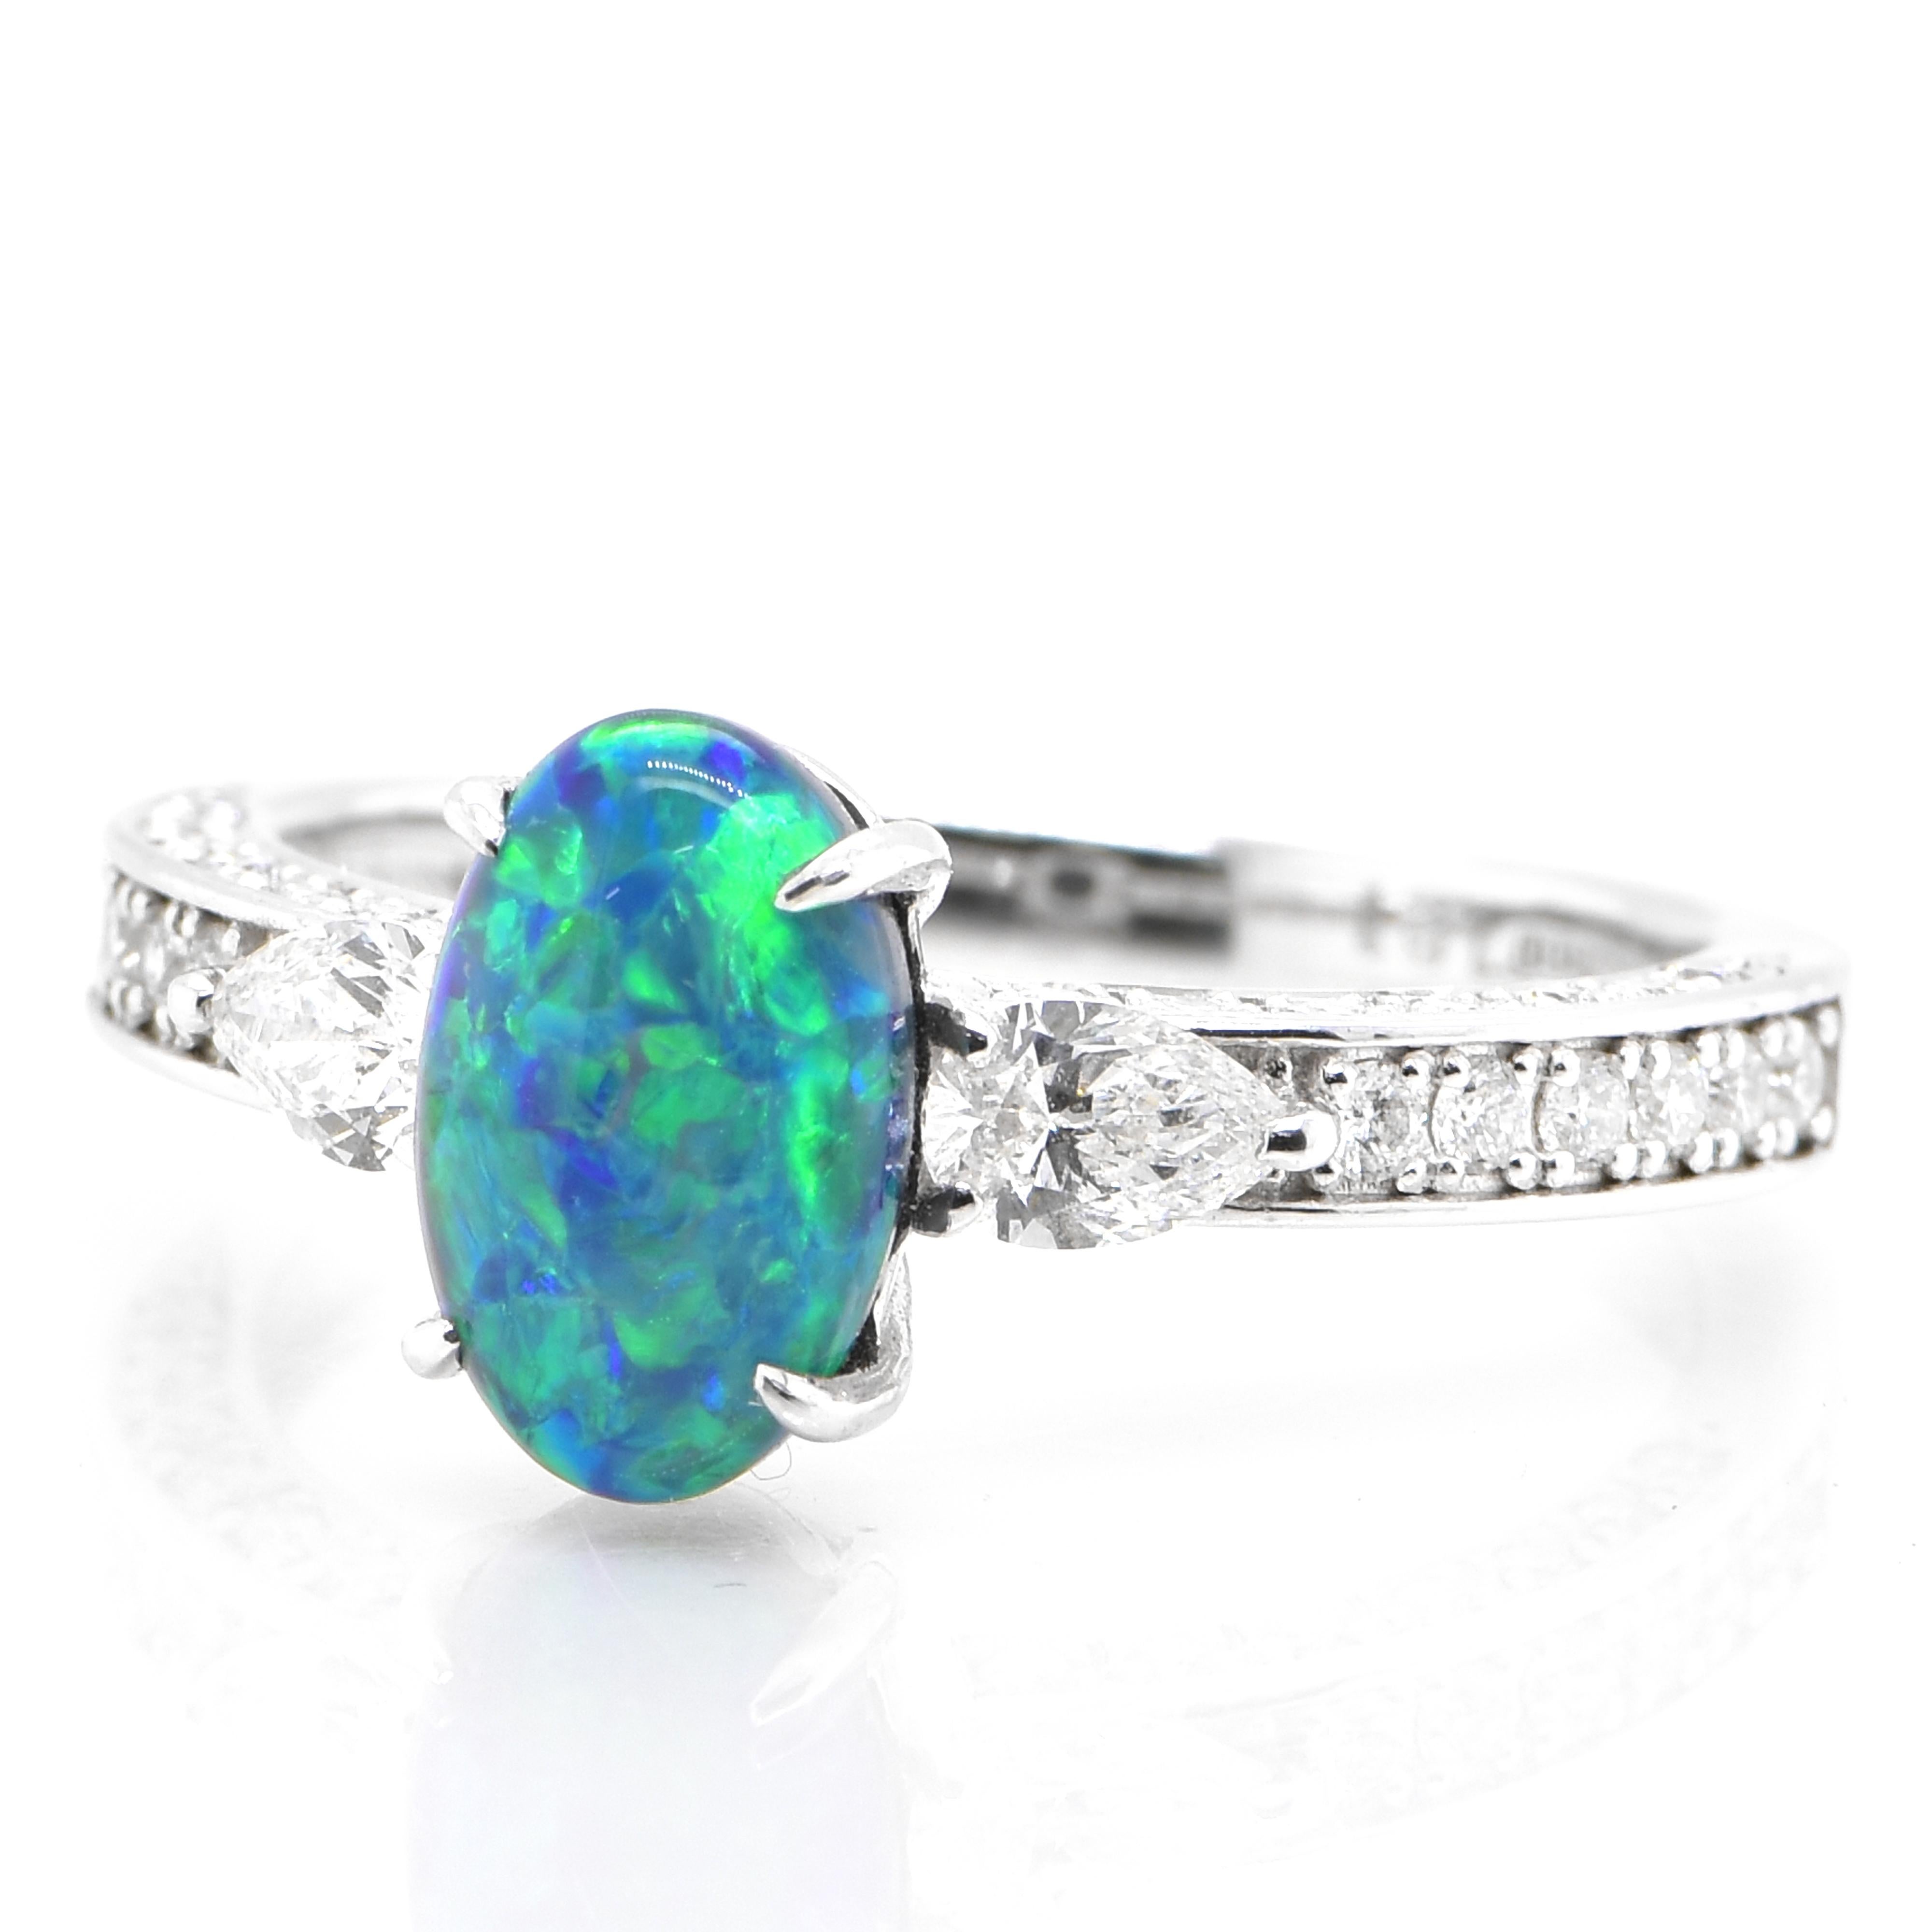 Ein wunderschöner Ring mit einem 1,21 Karat schweren, natürlichen, australischen schwarzen Opal und 0,57 Karat Diamanten in Platin gefasst. Der Opal zeigt ein sehr gutes Farbspiel! Opale sind dafür bekannt, dass sie blitzende Regenbogenfarben